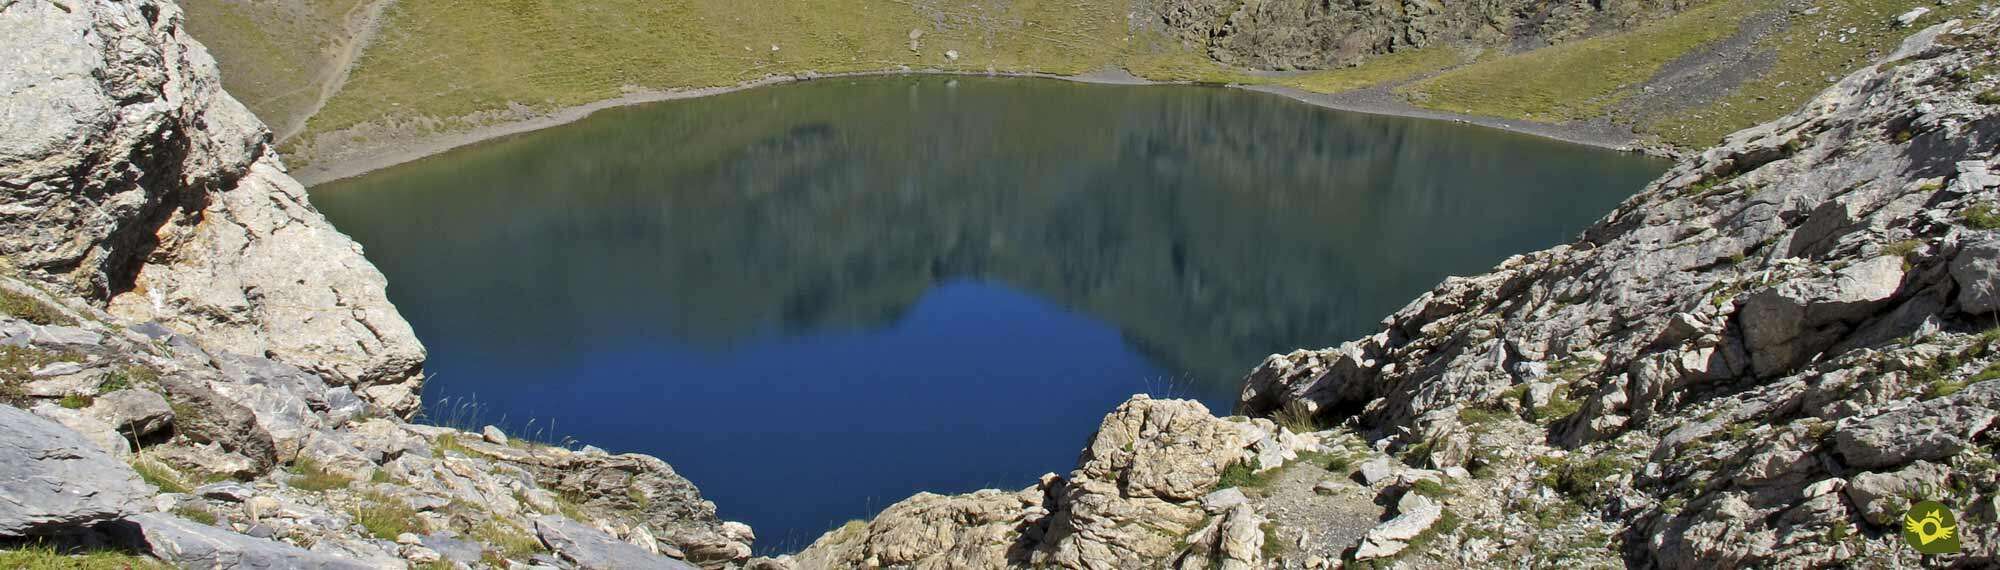 Pyrenean lake of  Bernatuara from Bujaruelo